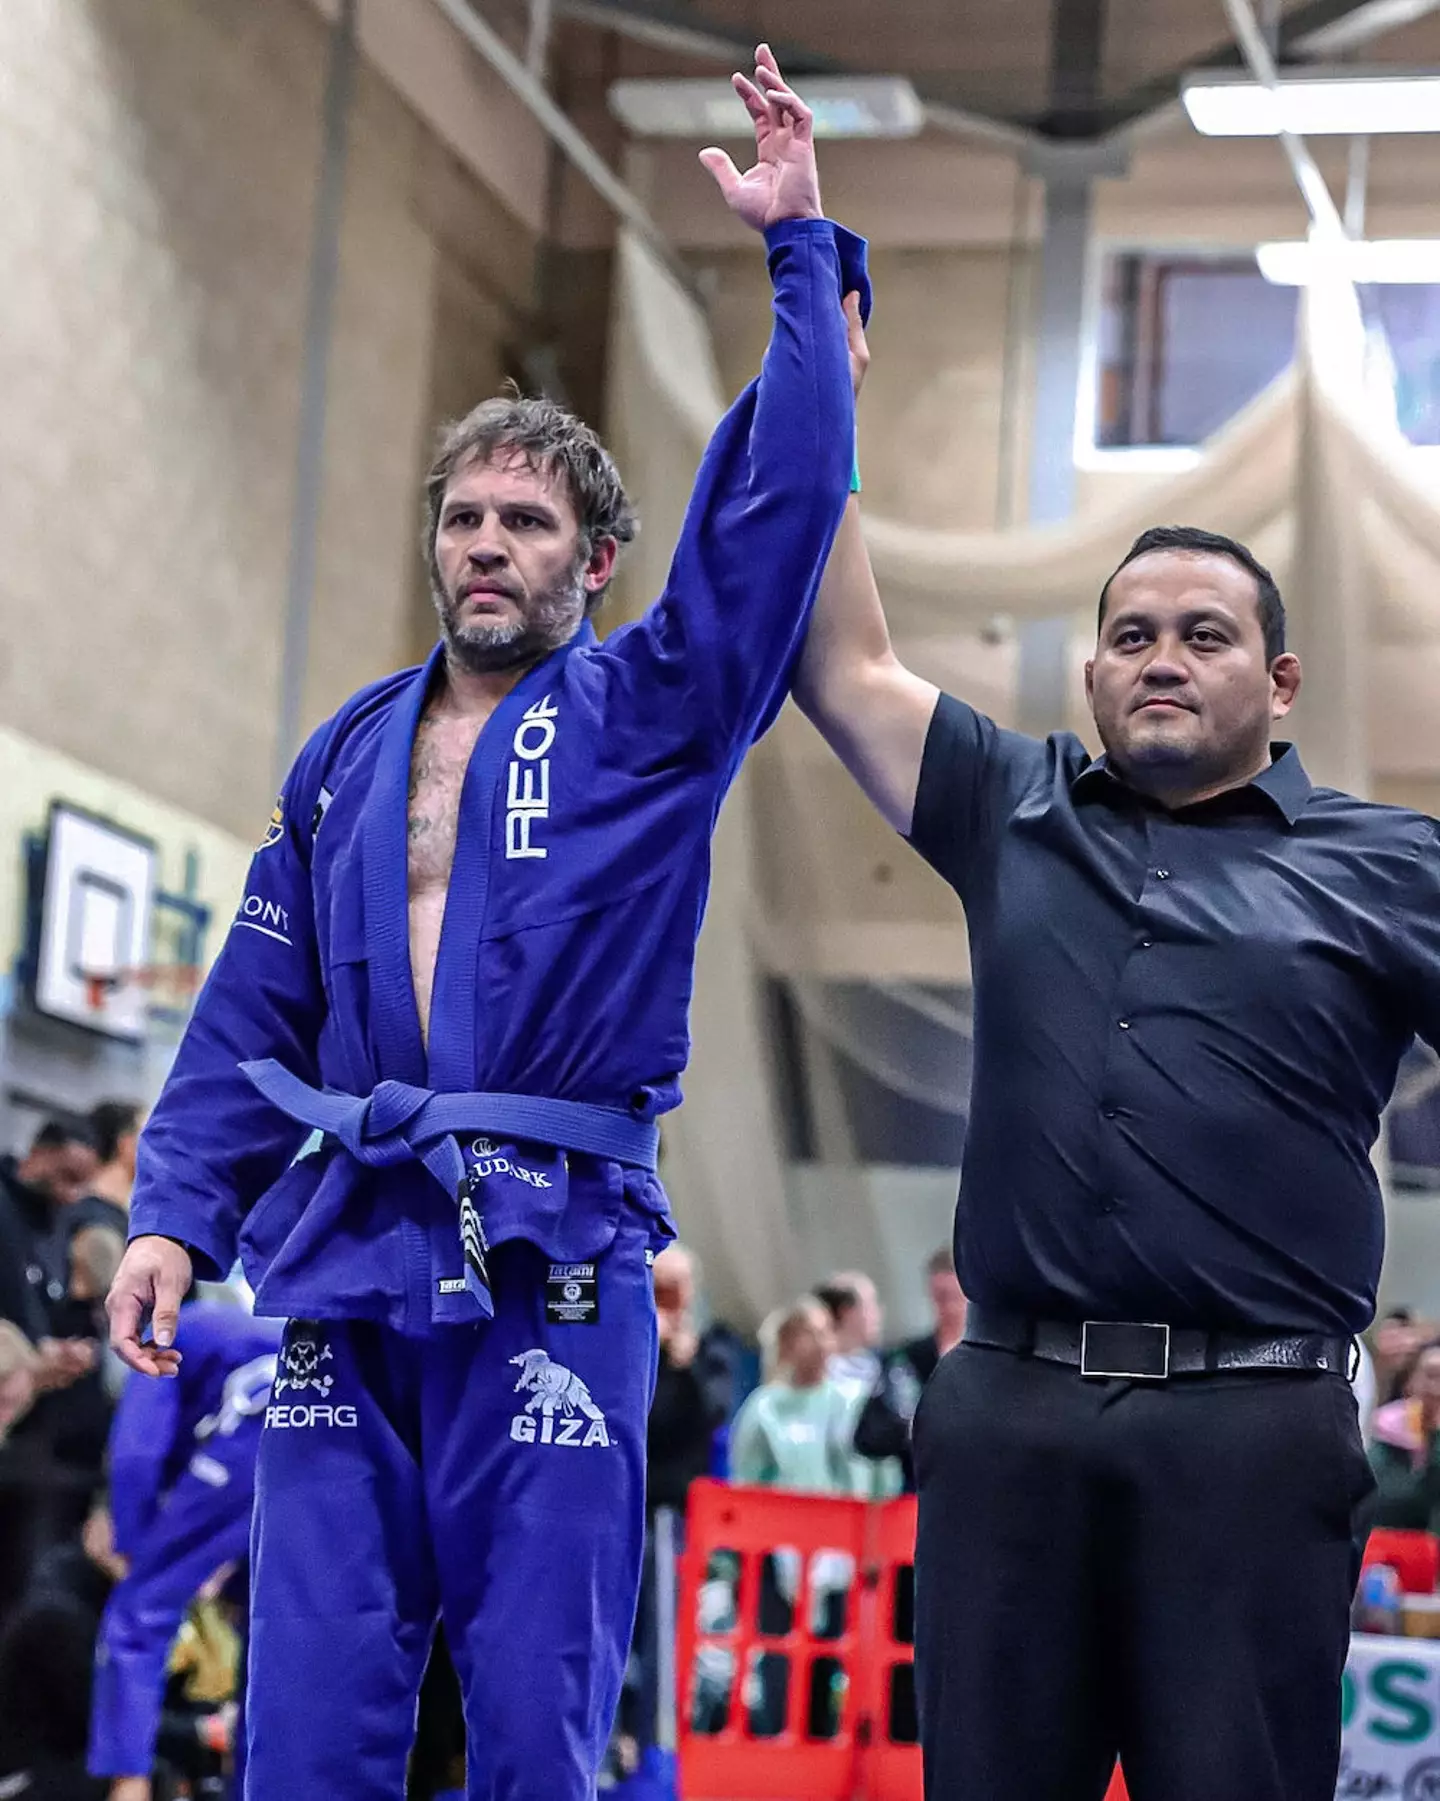 This isn't the first Brazilian Jiu-Jitsu championship he's won.